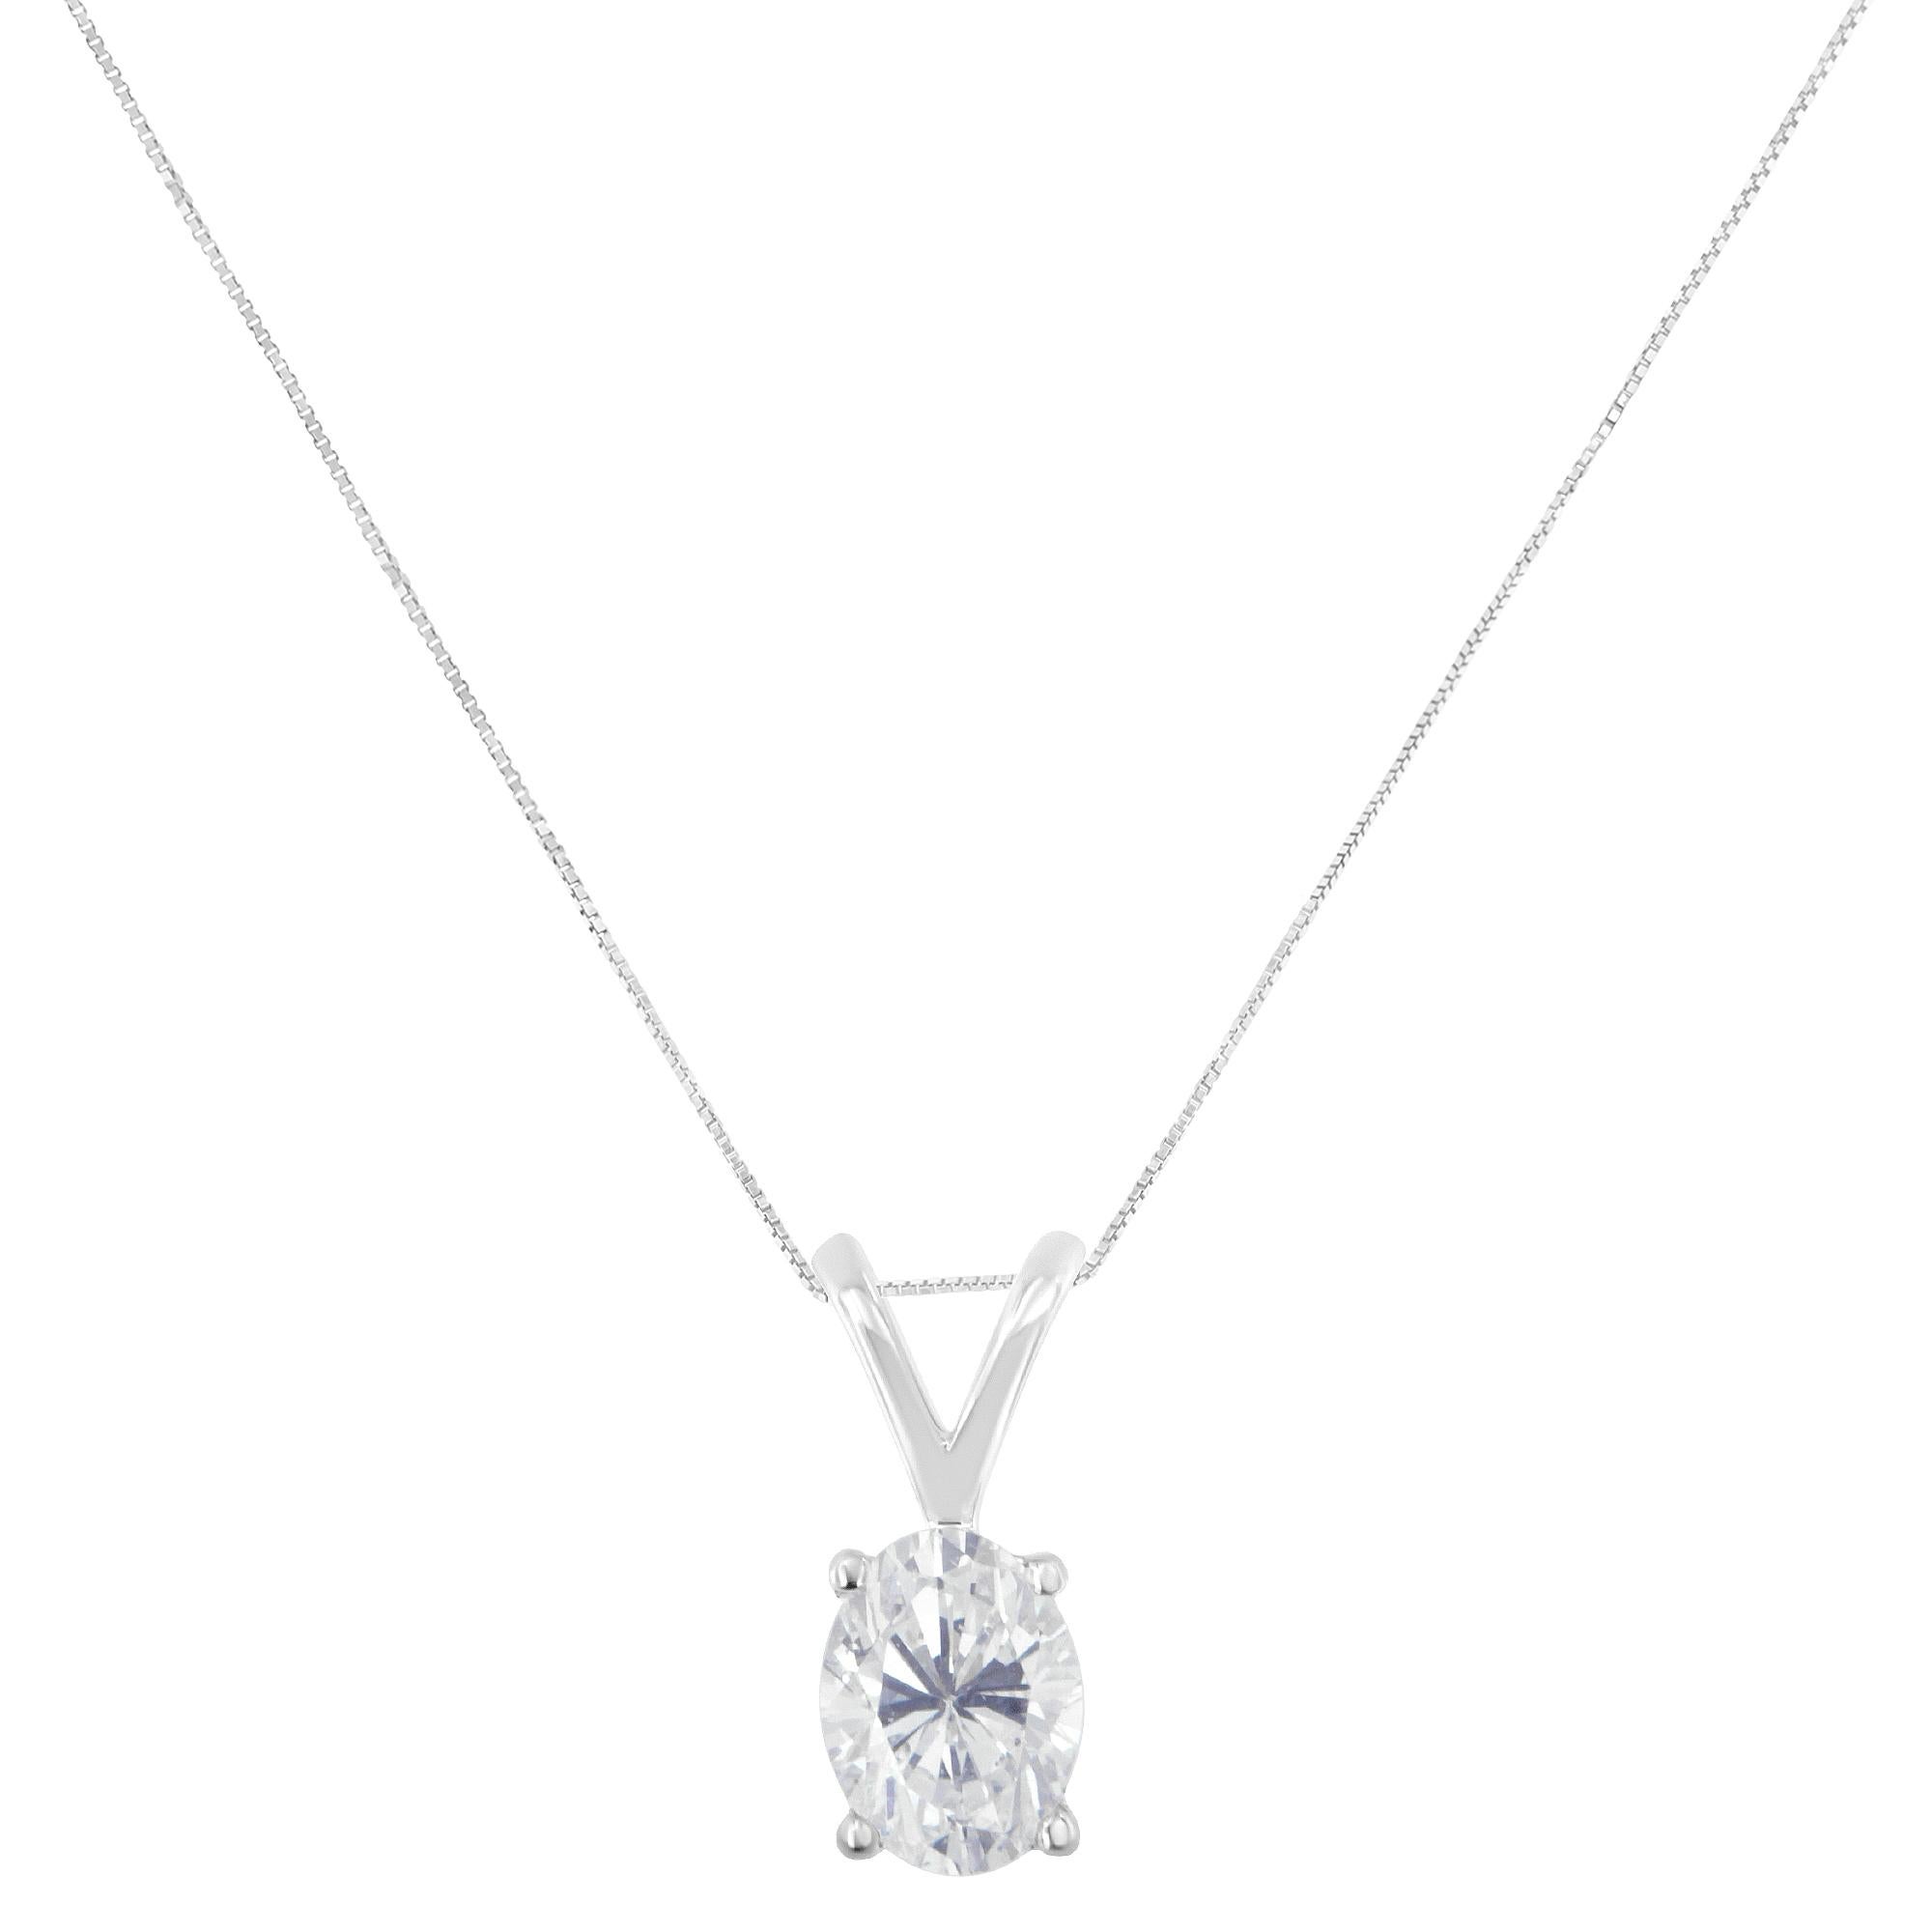 Élevez votre style grâce à l'allure intemporelle de ce collier à pendentif exquis, certifié par IGI. Dotée d'un superbe diamant ovale de 3/8 carats délicatement enchâssé dans une monture classique à quatre griffes, cette pièce exsude la